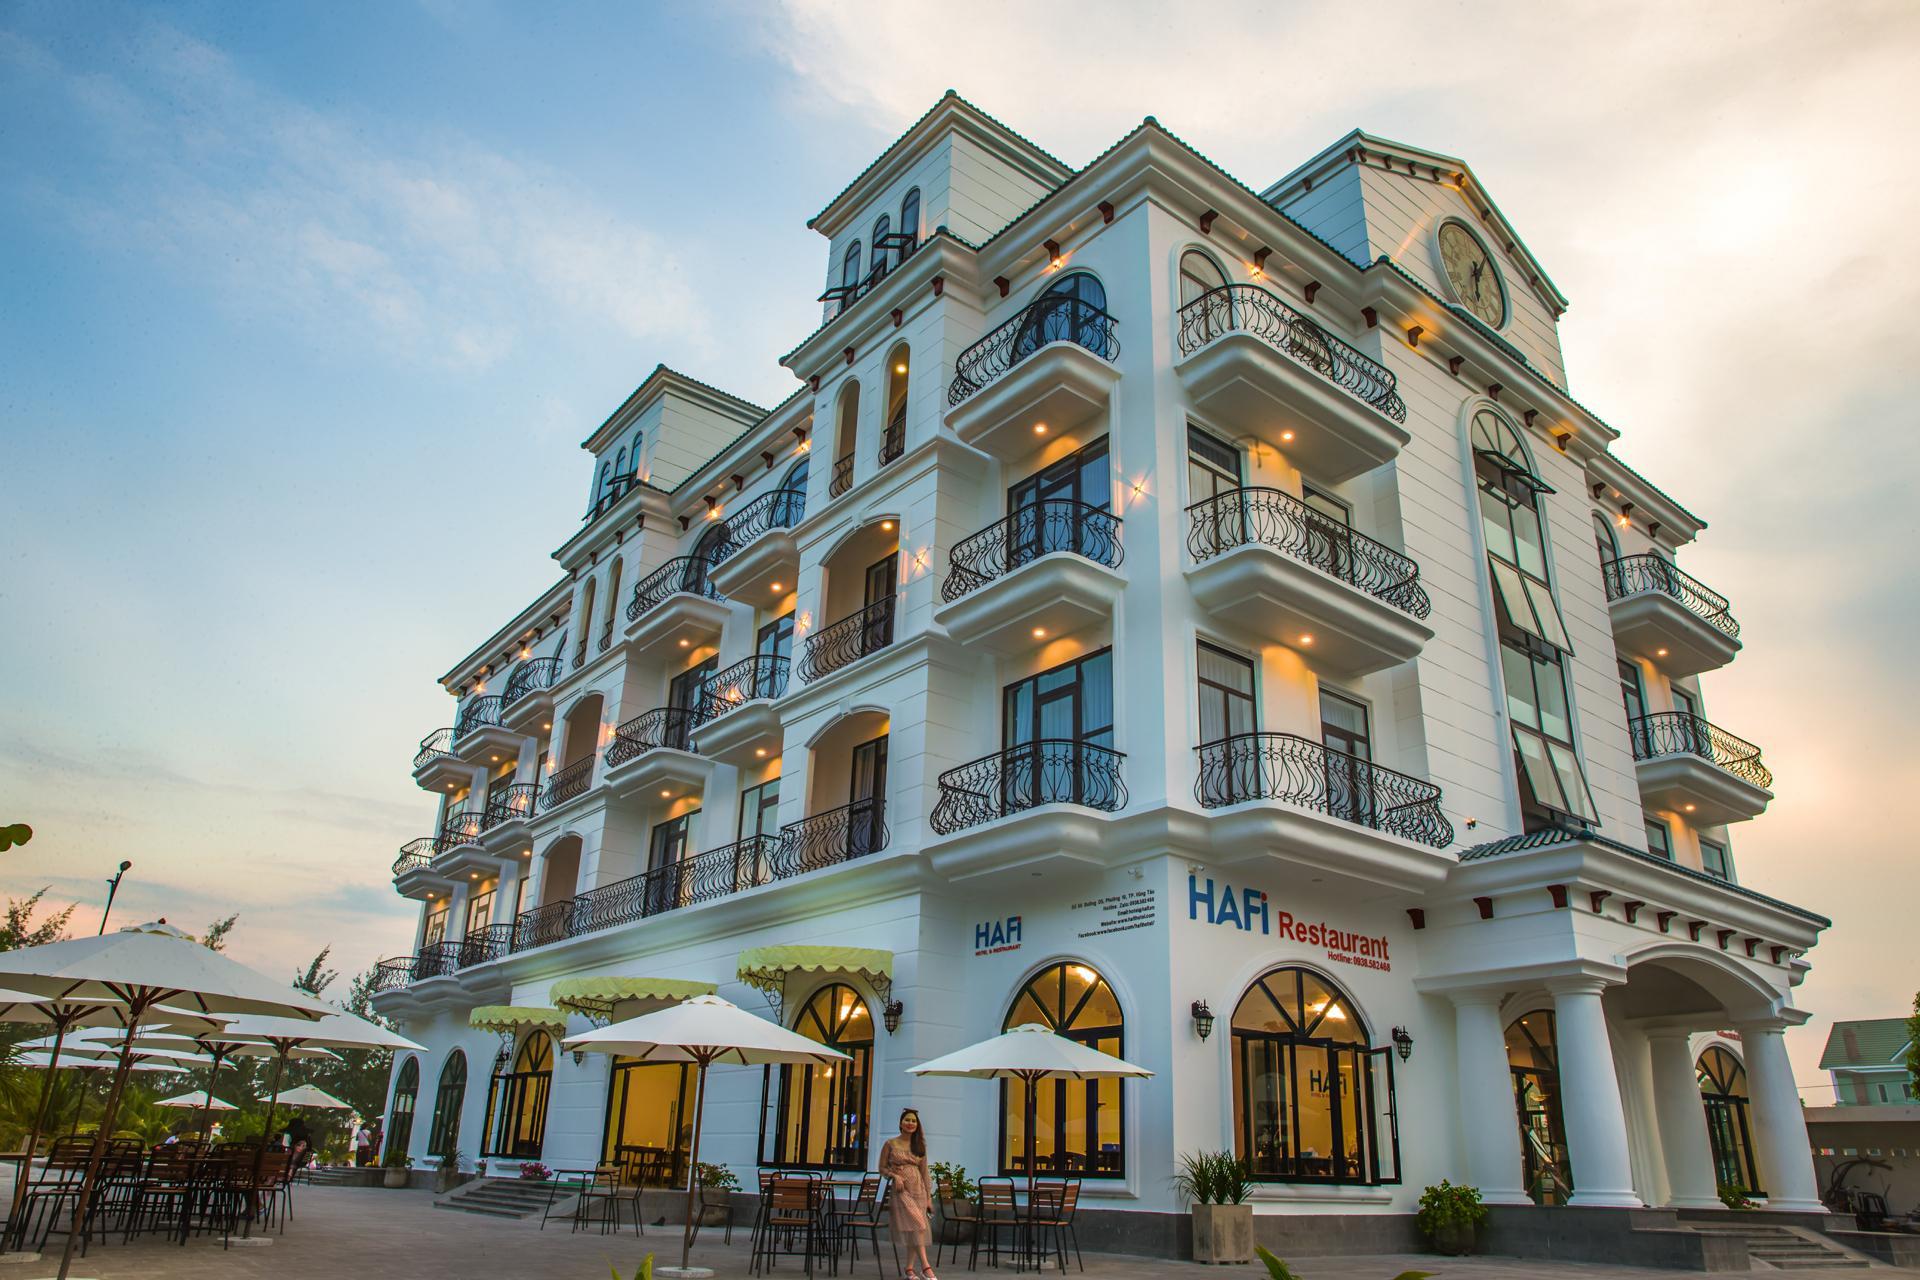 Hafi Hotel and Restaurant - Viên ngọc đẹp của Vũng Tàu